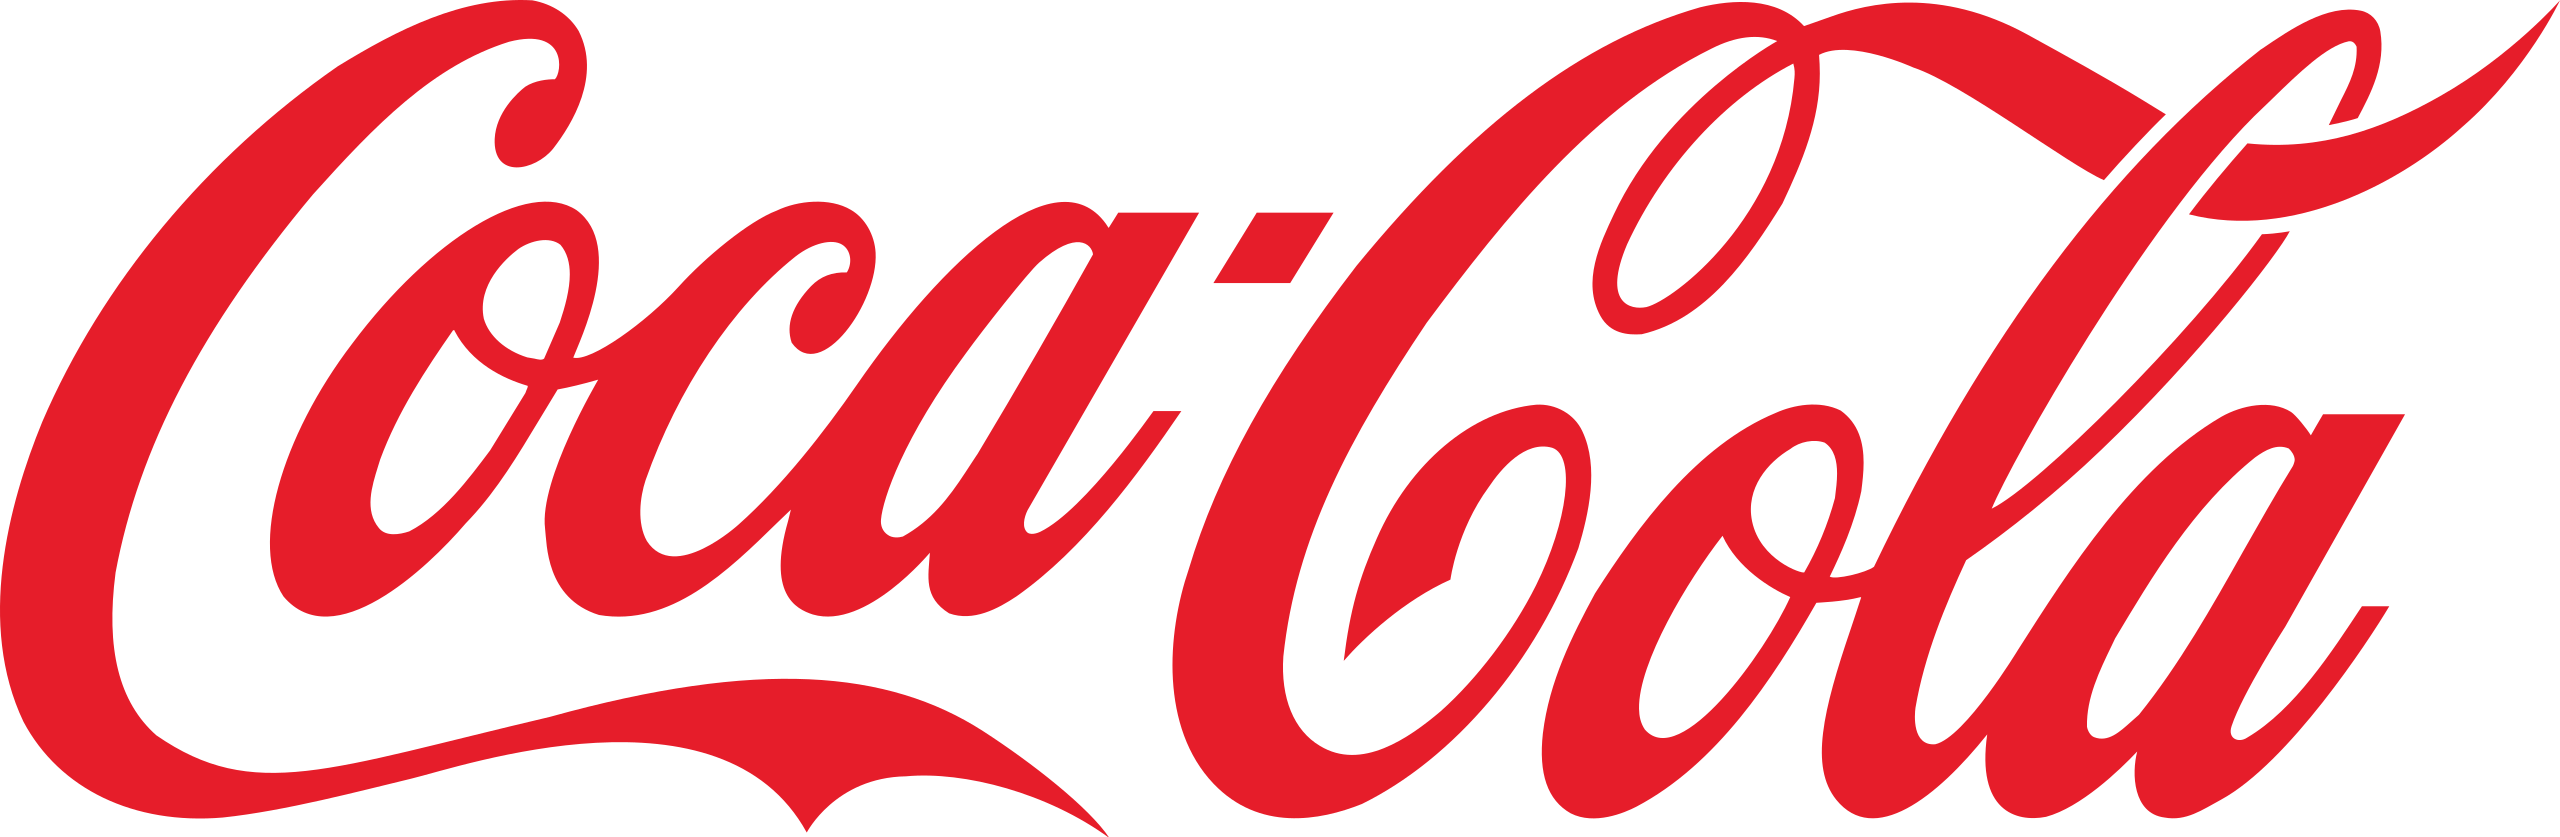 Cocal Cola logo